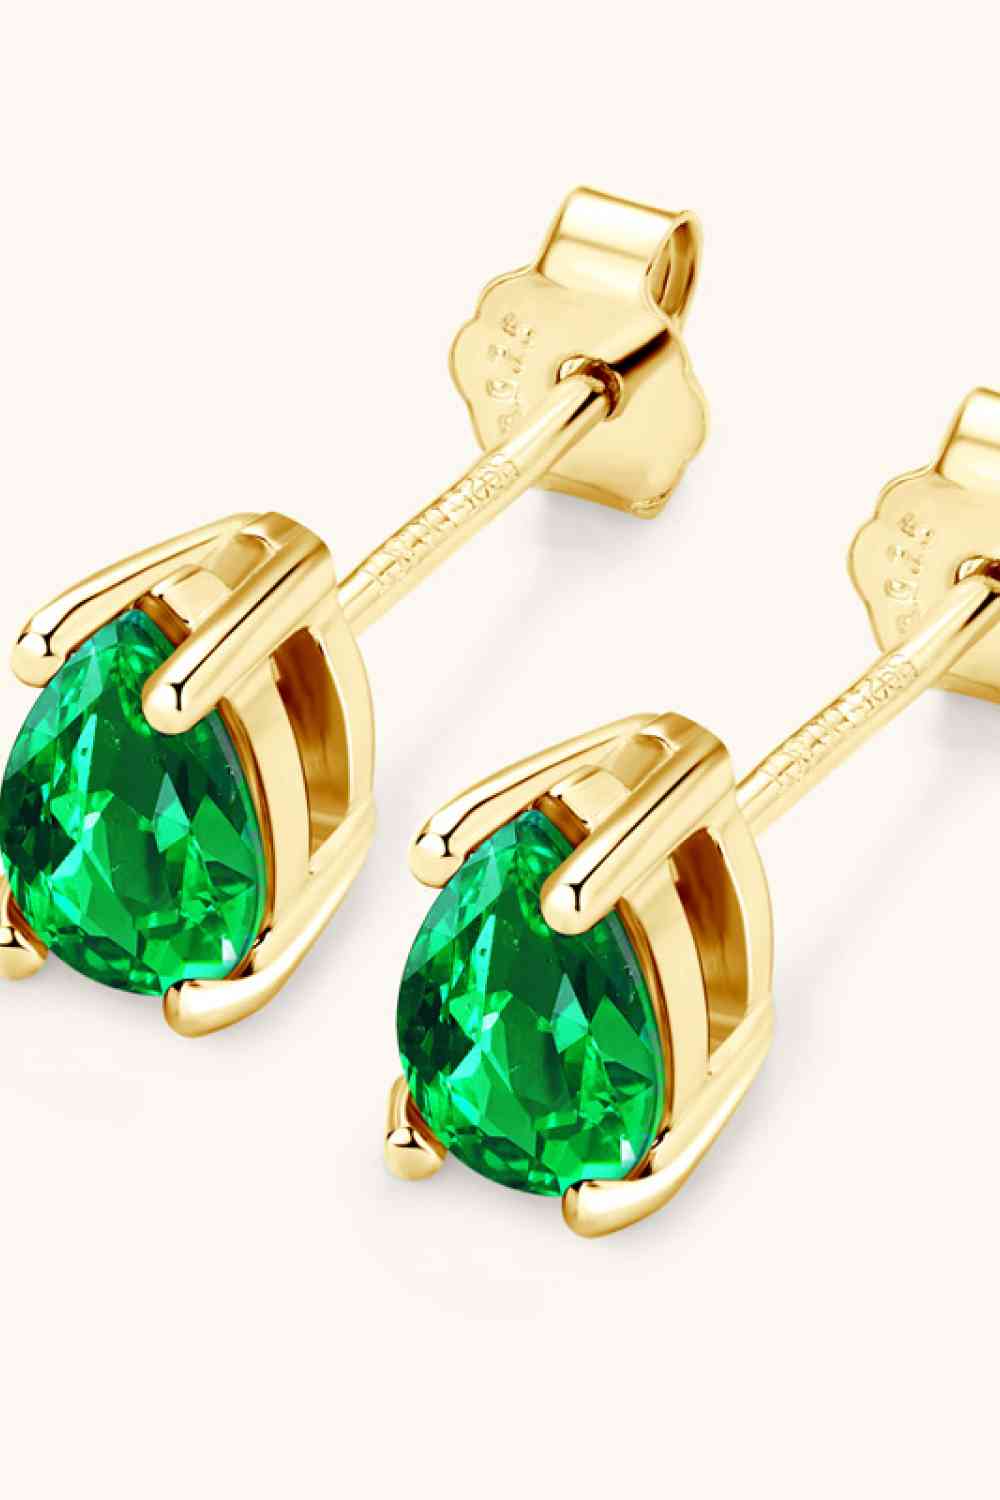 Lab-Grown Emerald Stud Earrings BLUE ZONE PLANET